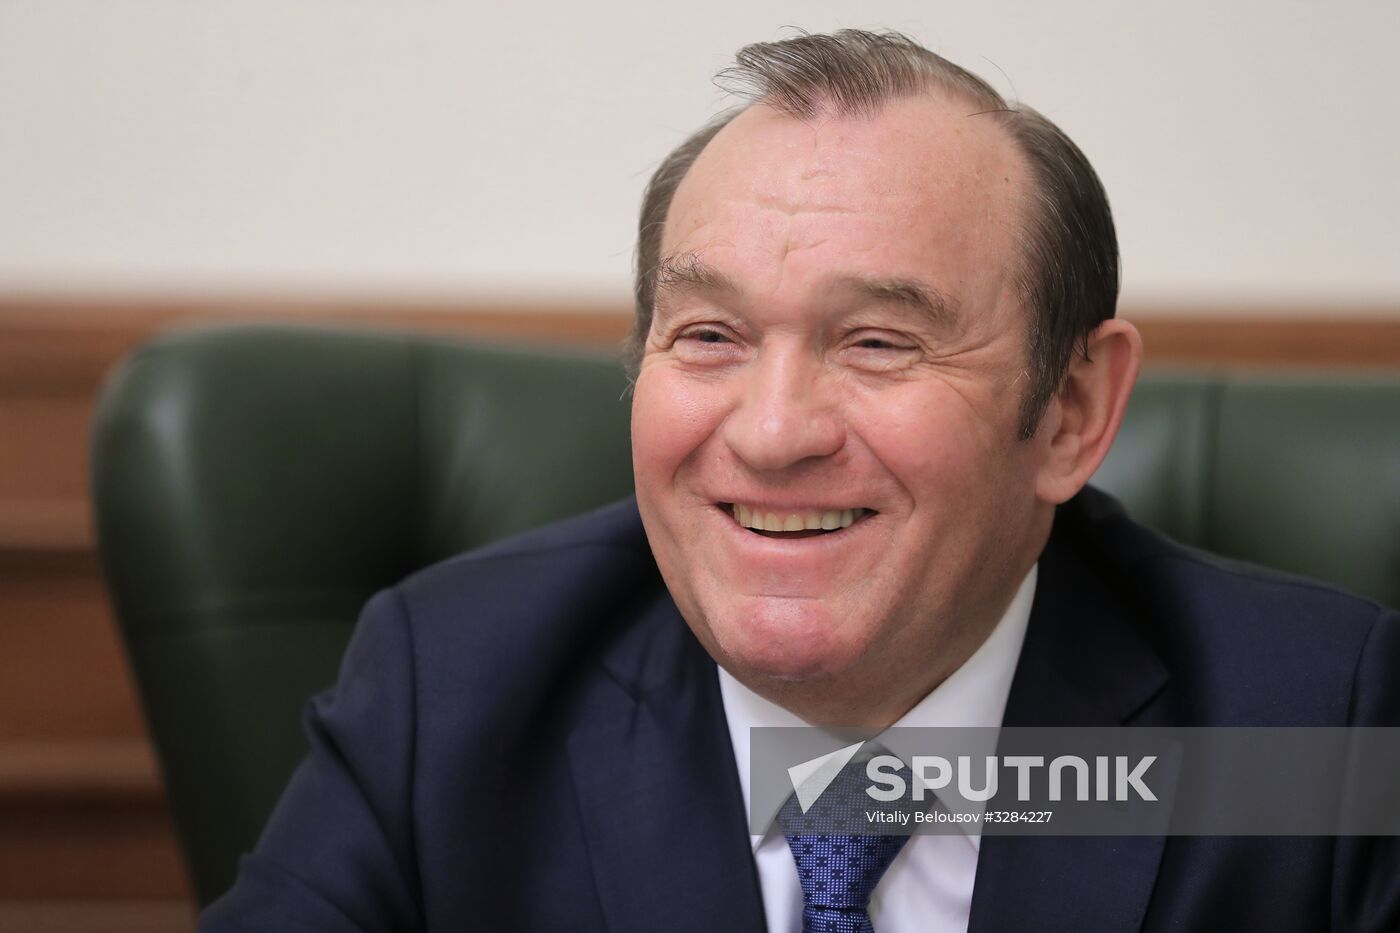 Interview by Deputy Moscow Mayor Pyotr Biryukov